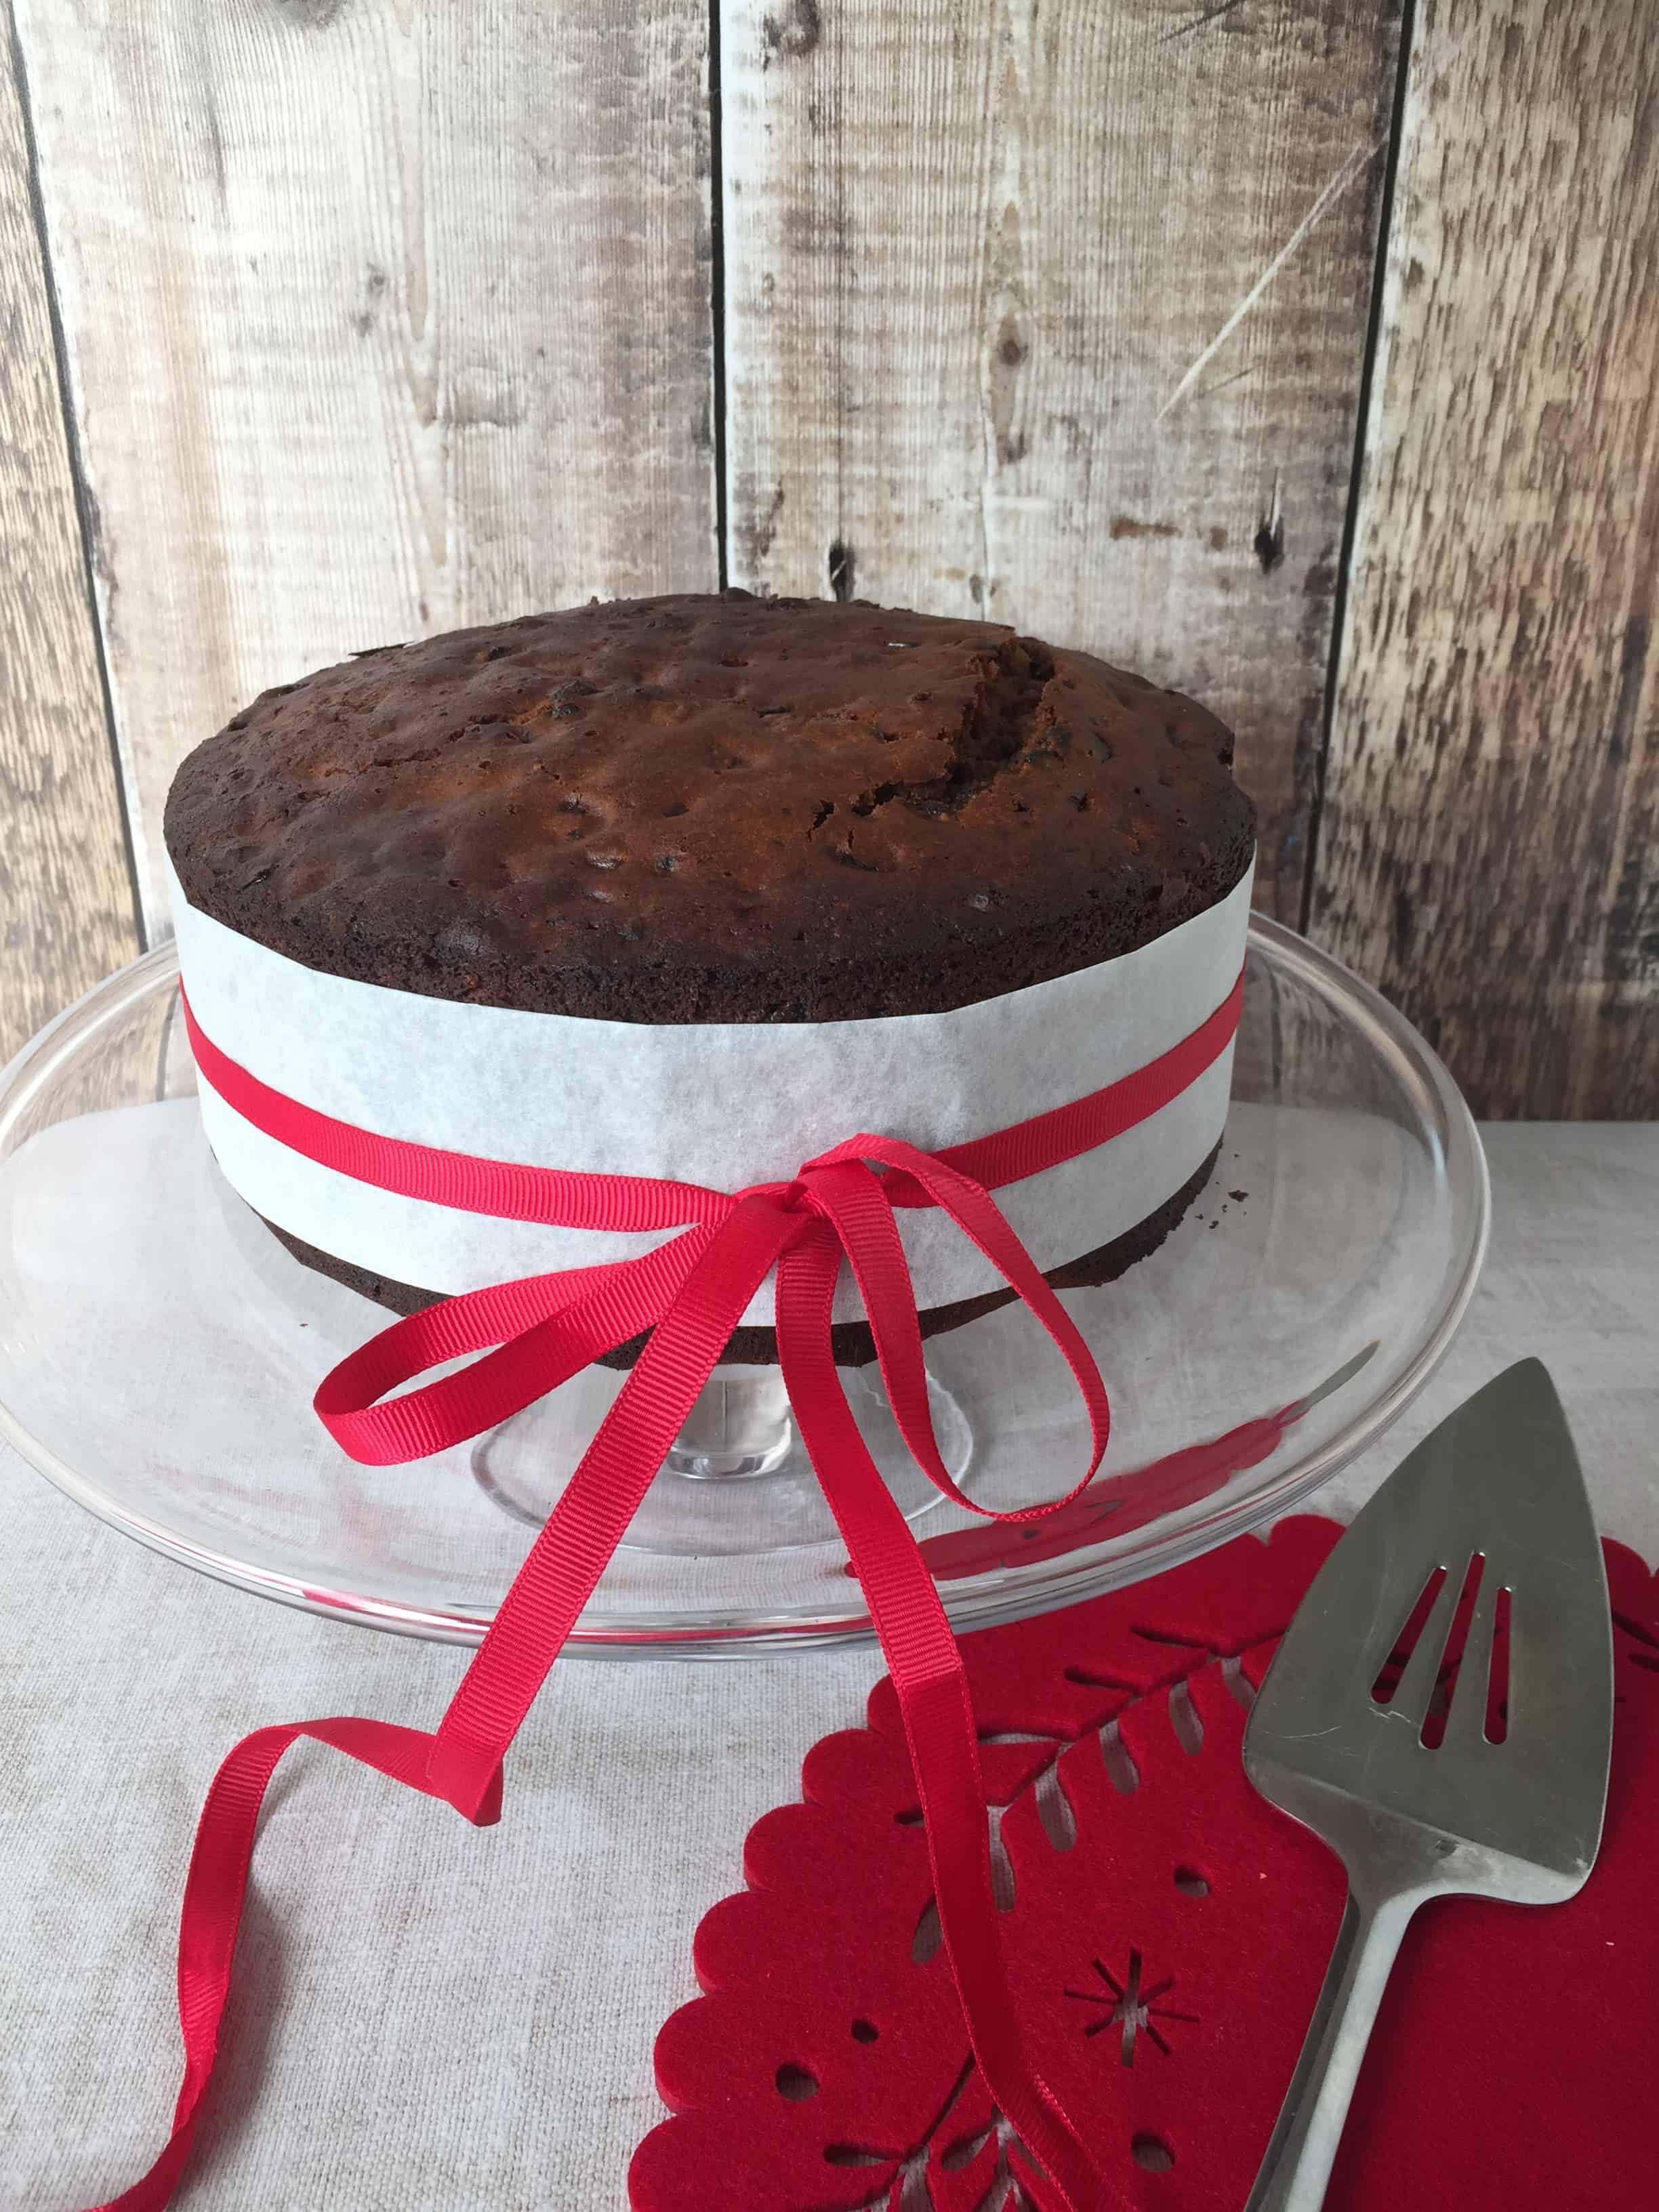 Hygge Baking: Nan's Christmas Cake – Bramble & Fox®